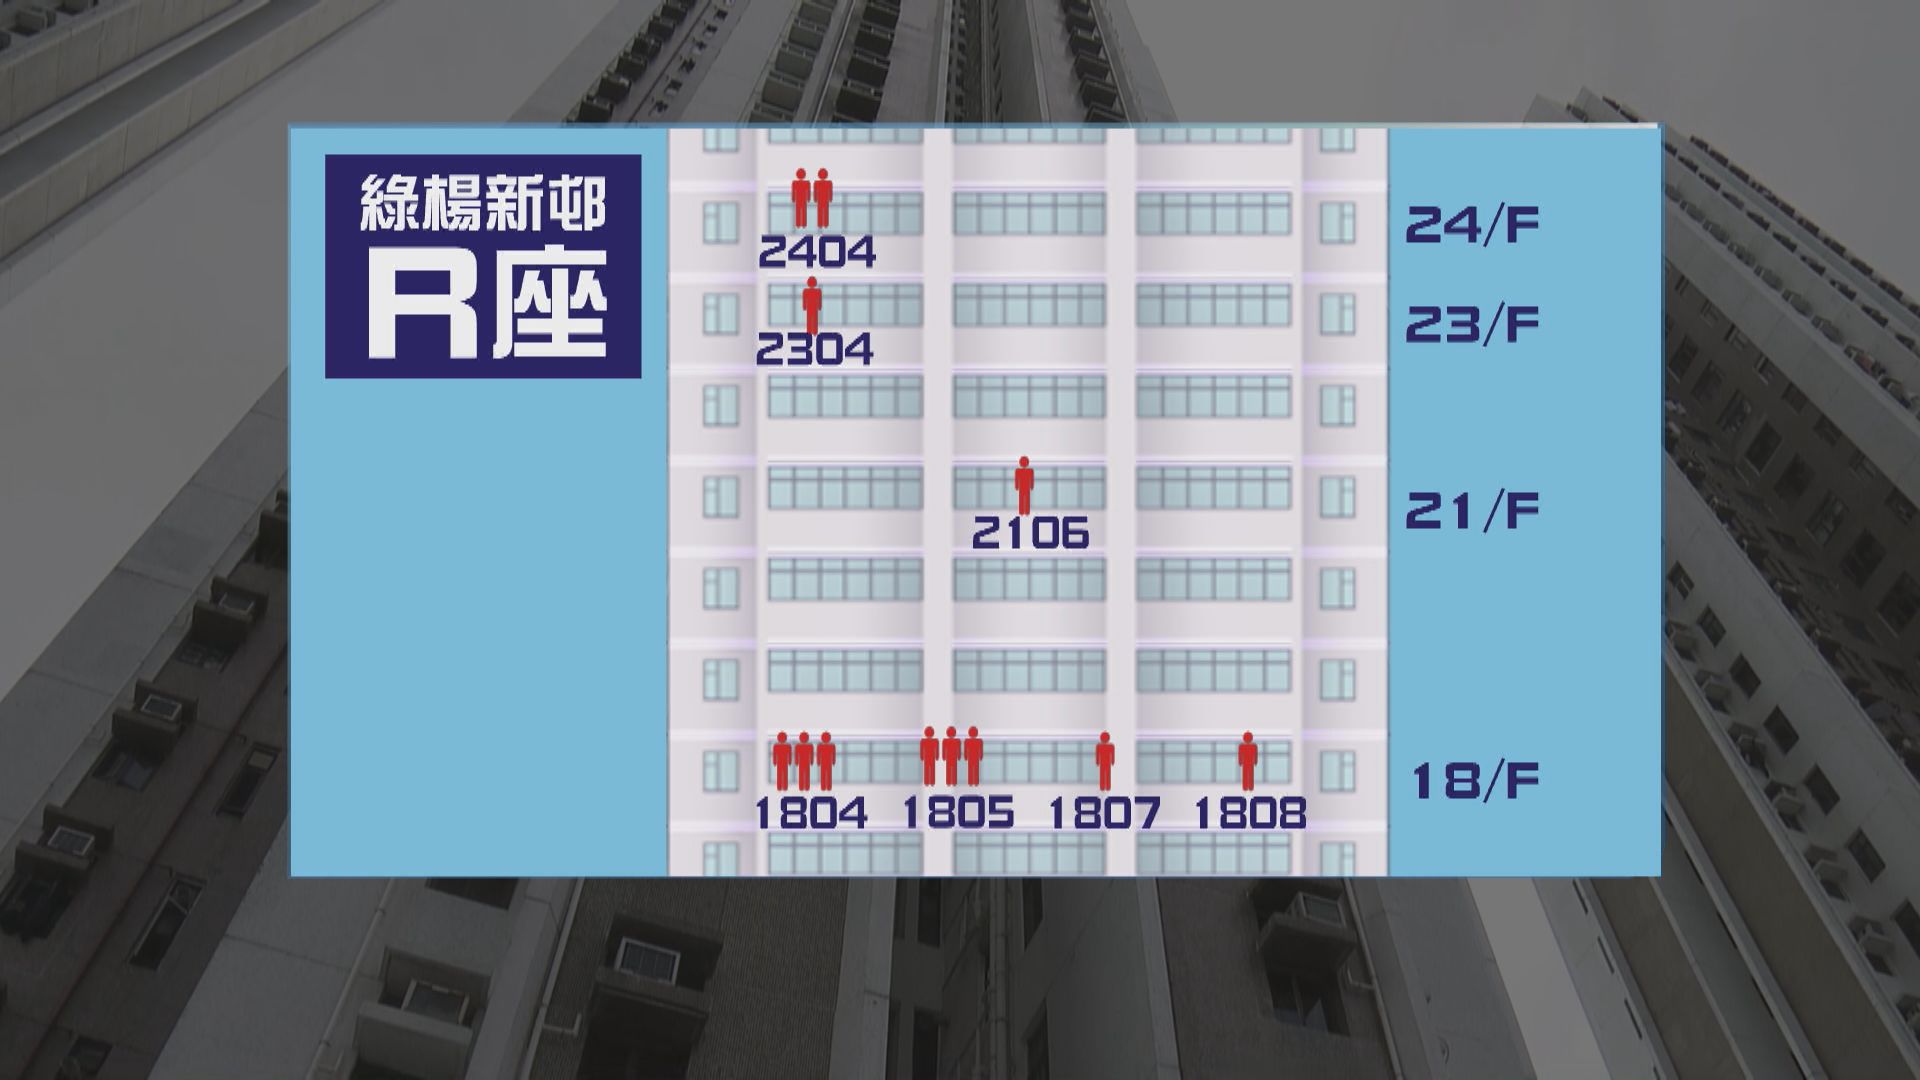 荃灣綠楊新邨R座18樓以上04及05室住戶需撤離檢疫